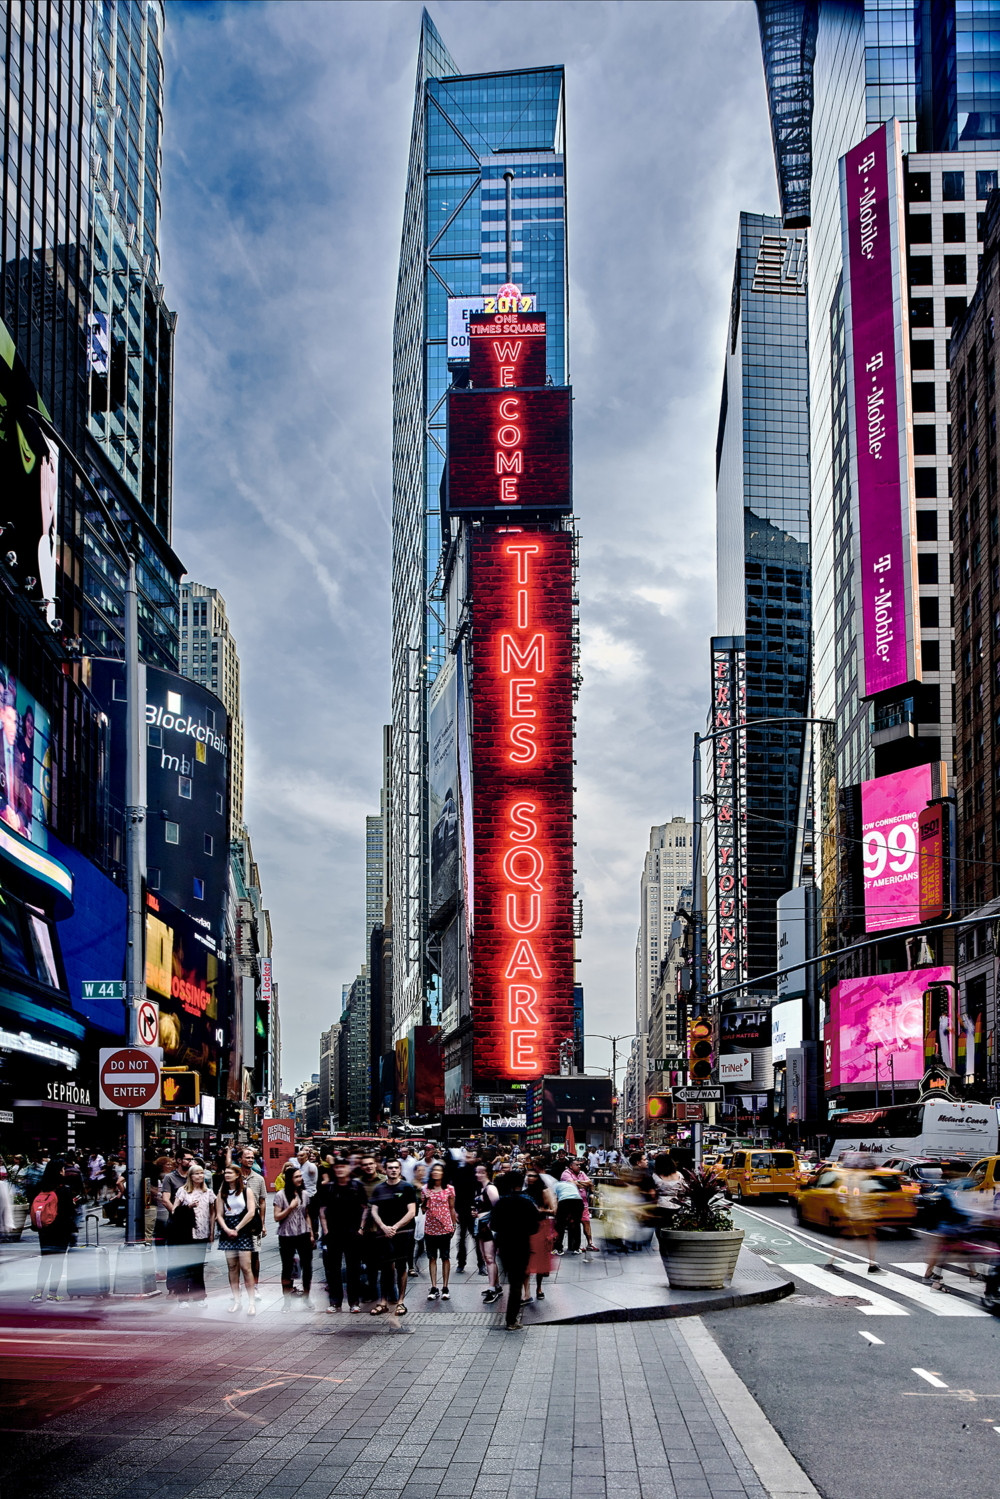 Tìm hiểu những điều hấp dẫn nào đang chờ bạn ở Times Square Quảng trường Thời đại - ảnh 6